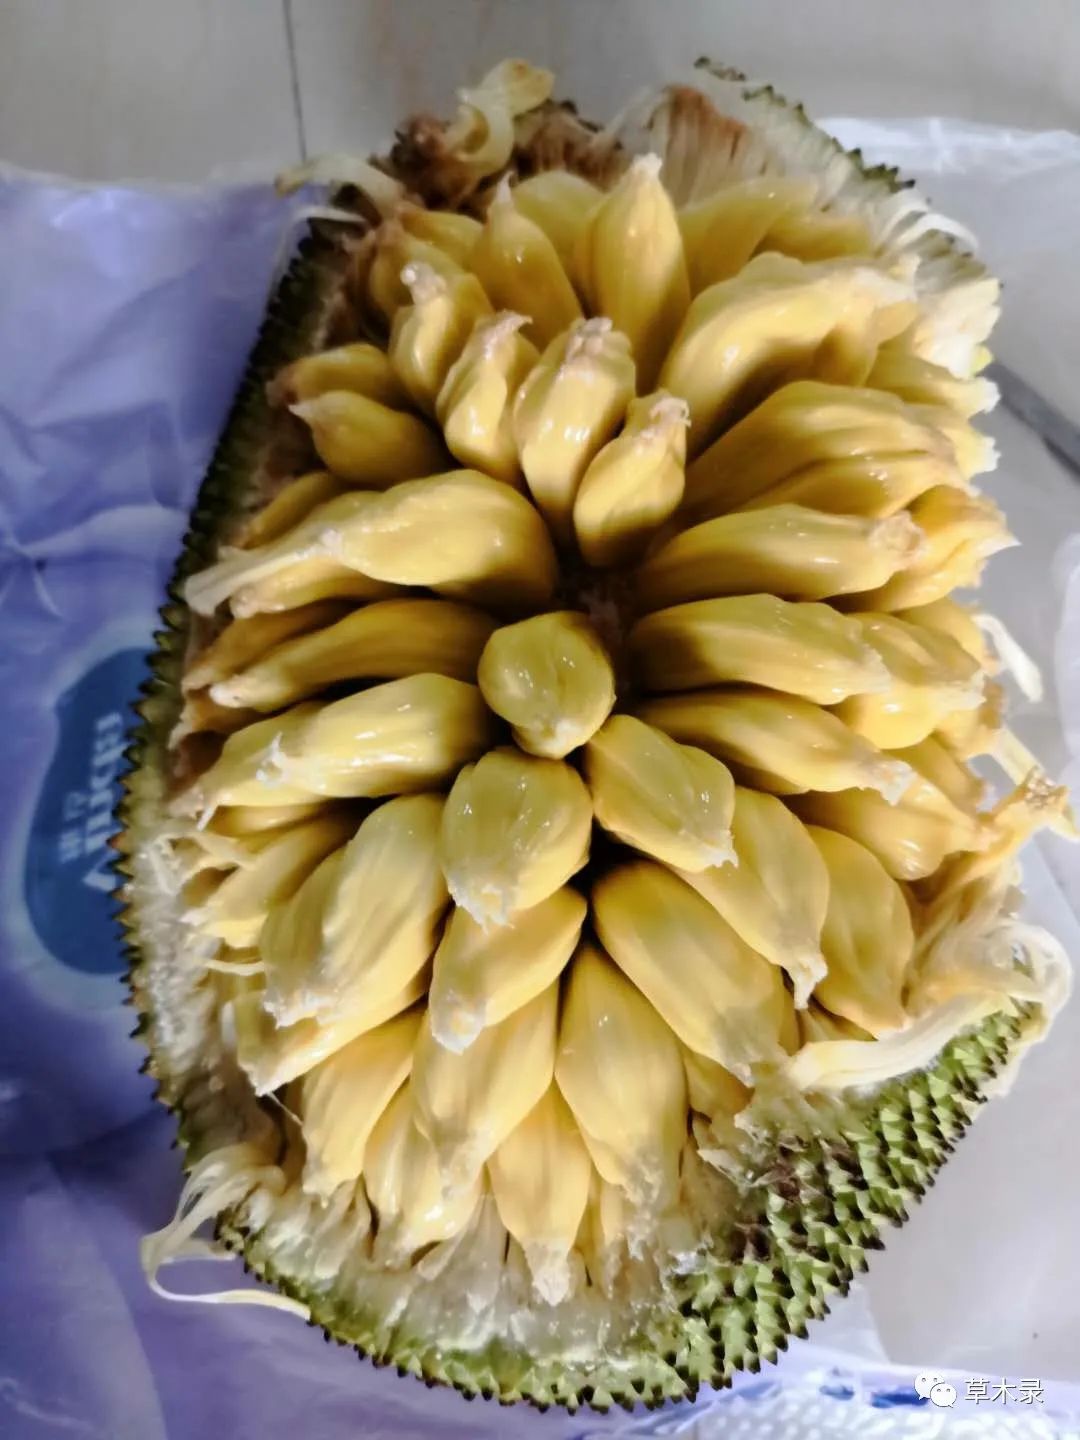 菠萝蜜粘液怎么洗掉_菠萝菠萝蜜菠萝菠萝1_菠萝蜜的籽可以吃吗有什么功效